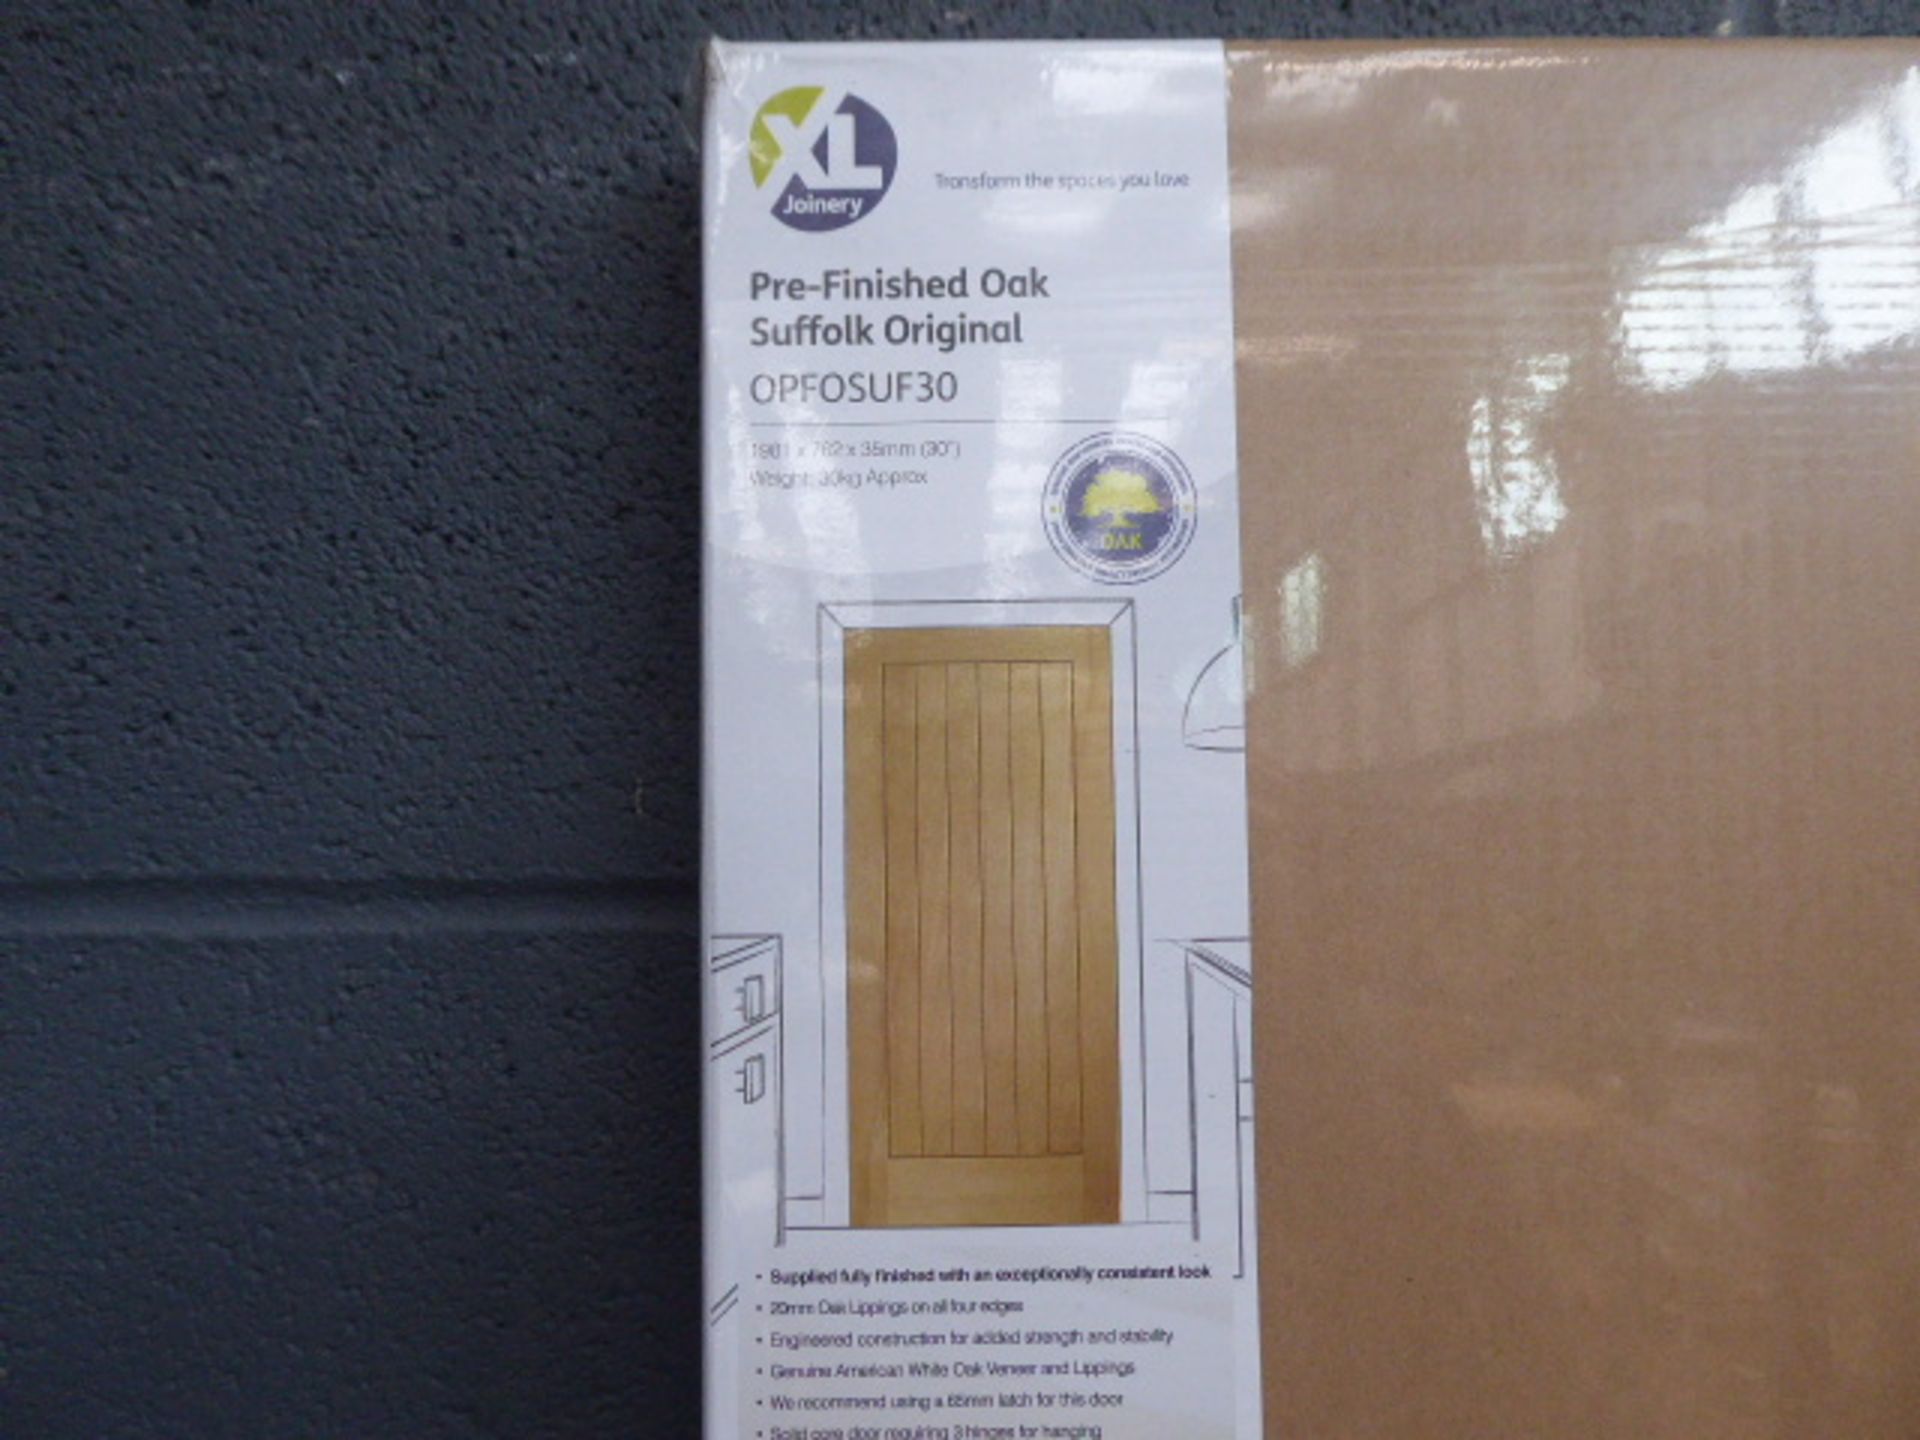 Boxed oak Suffolk door - Image 2 of 2